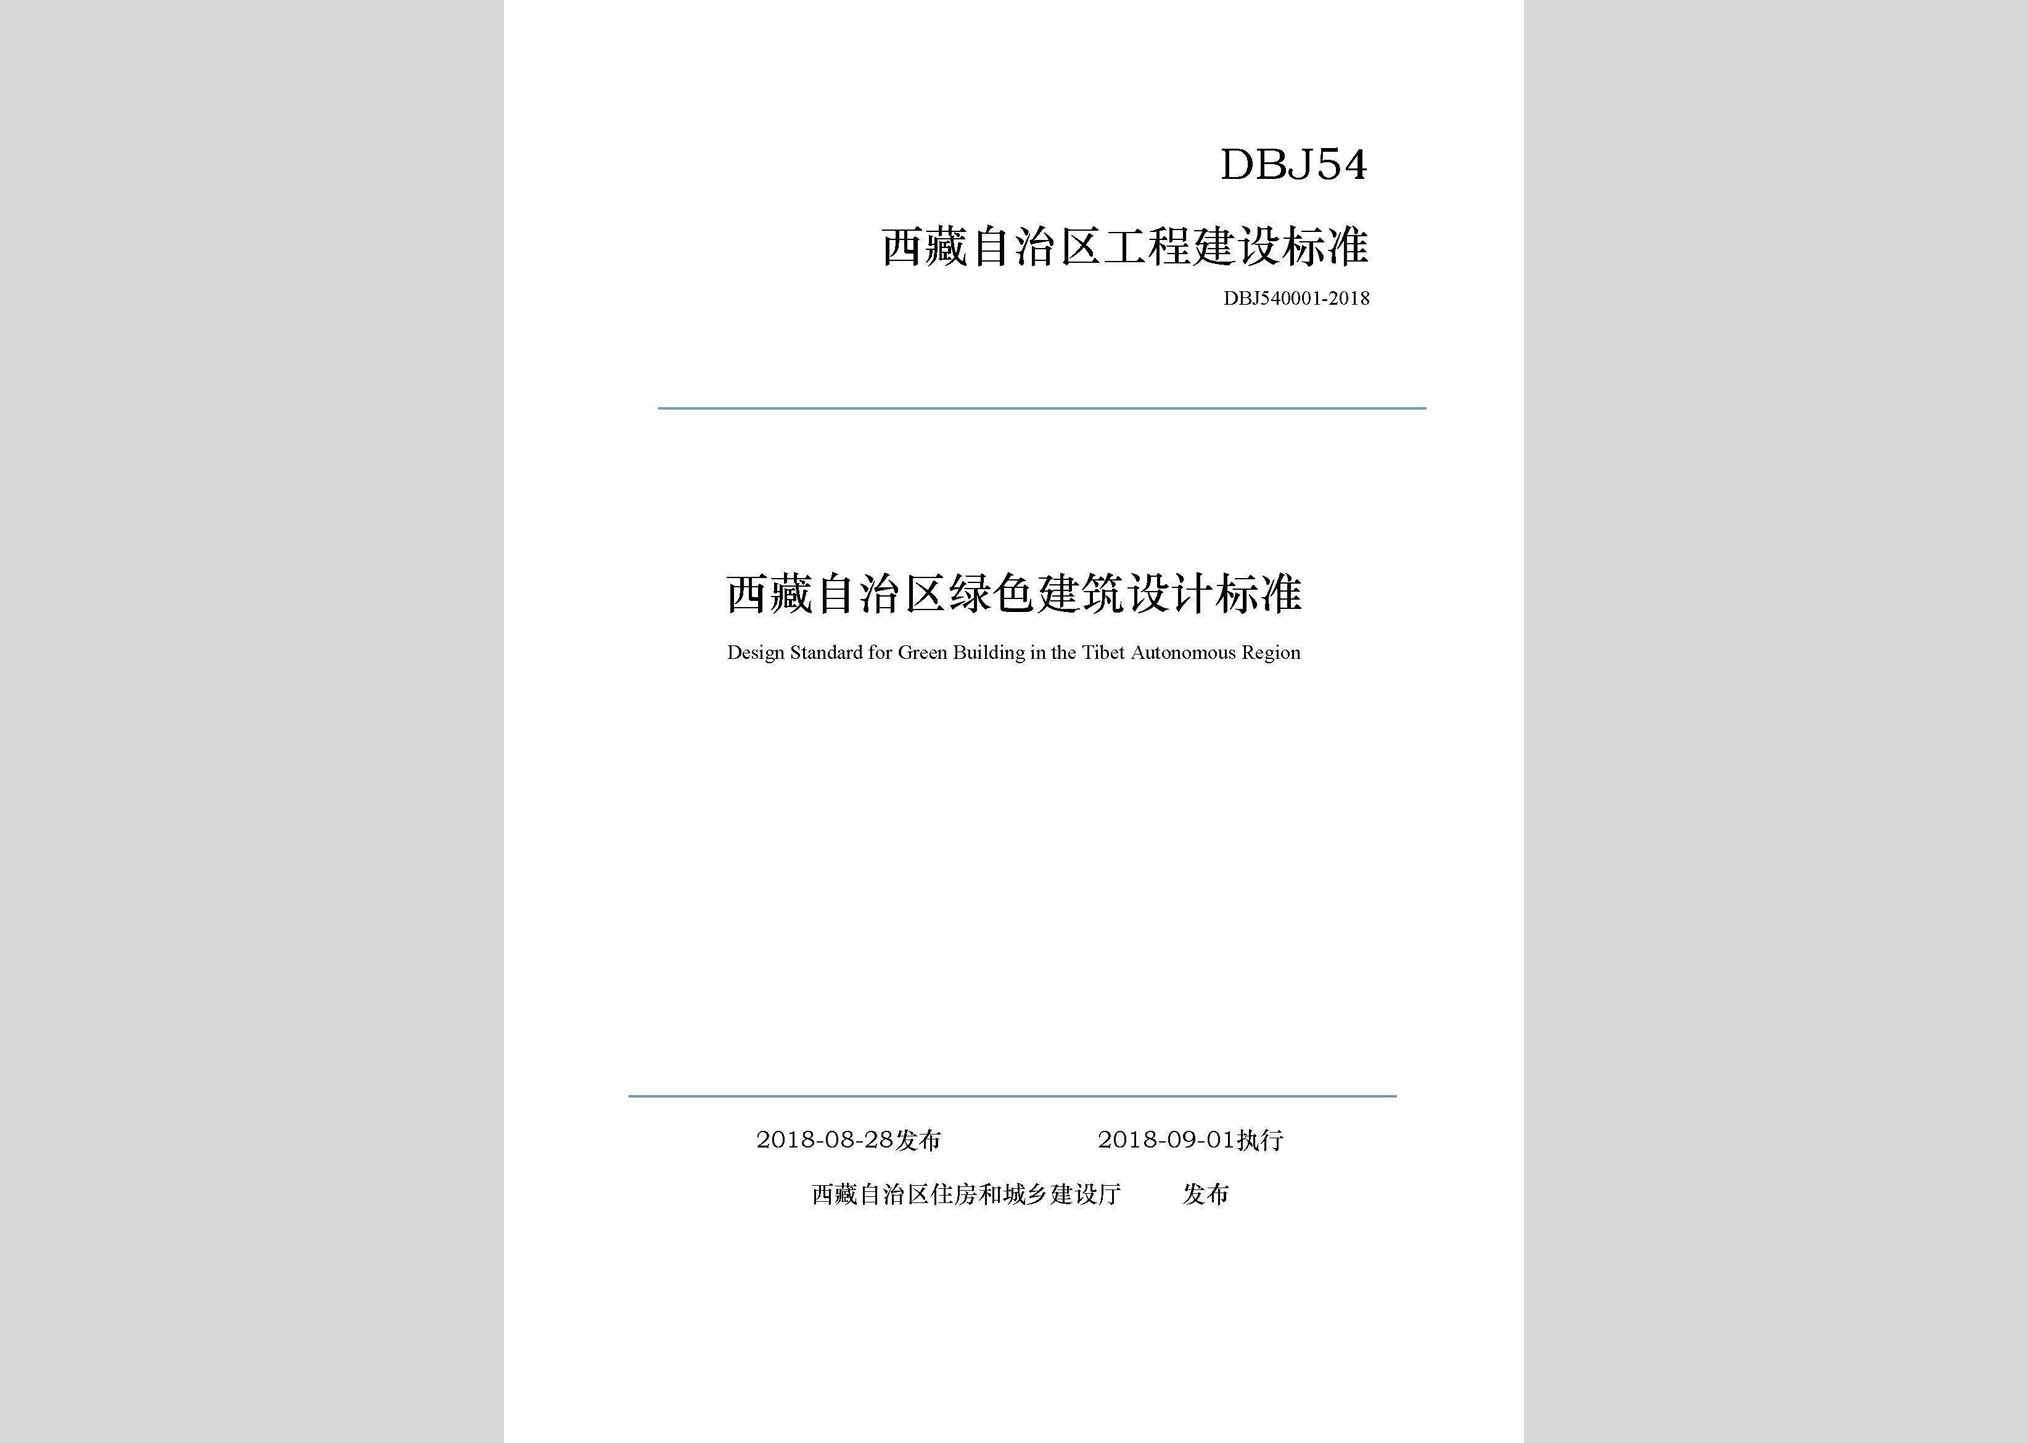 DBJ540001-2018：西藏自治区绿色建筑设计标准